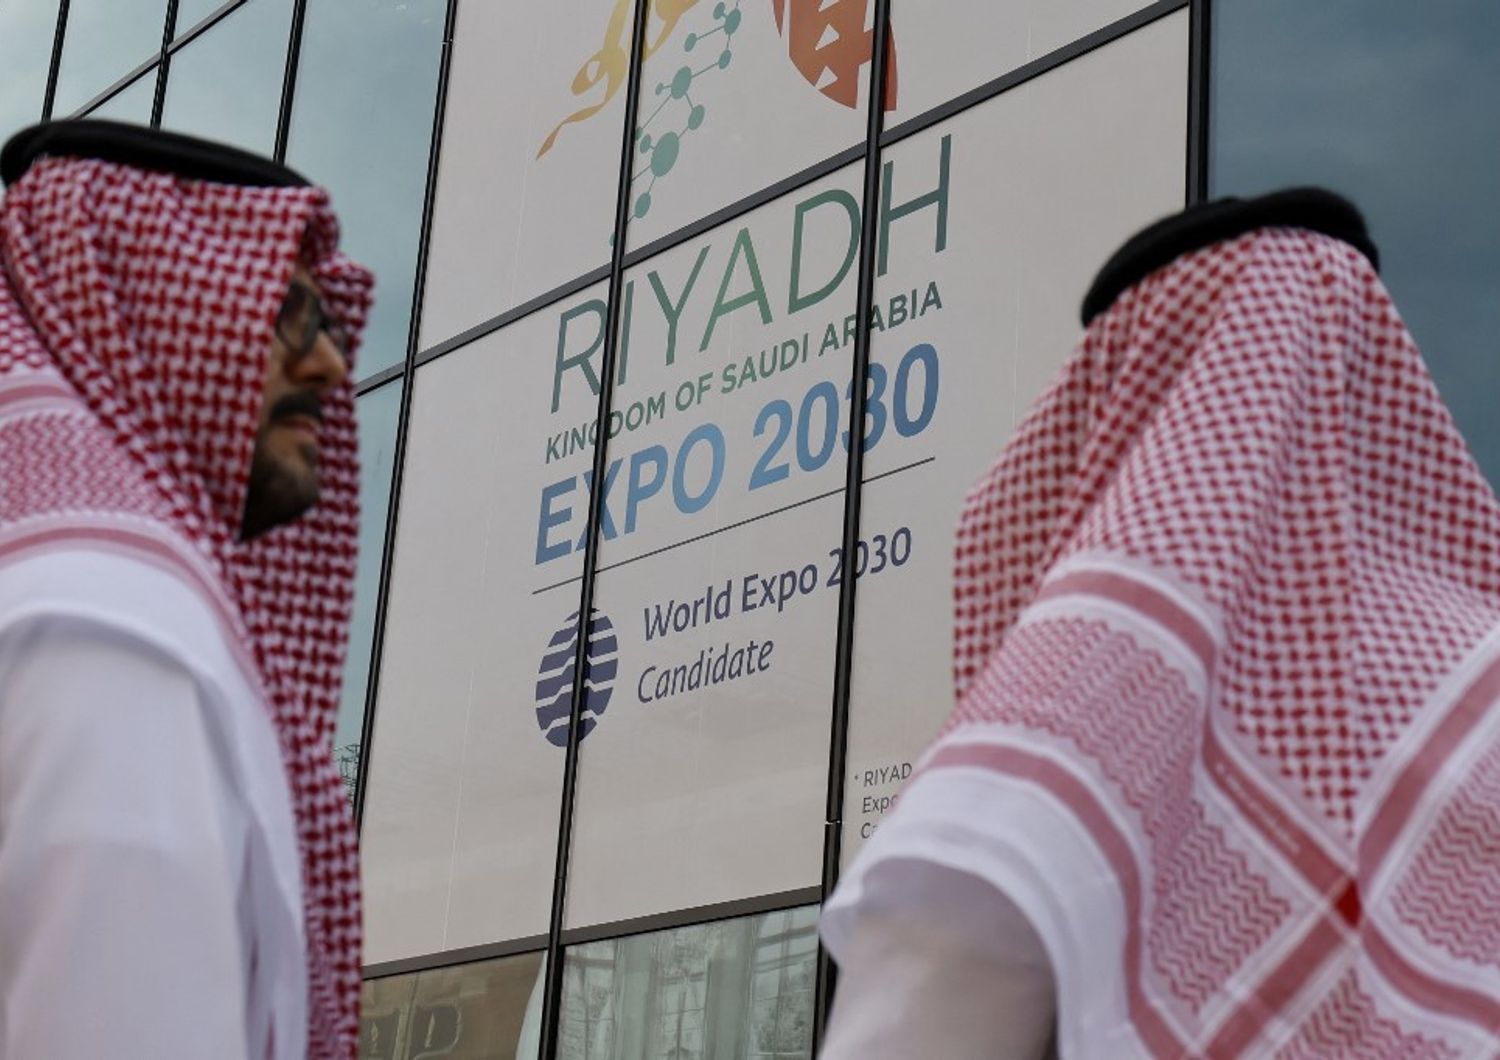 Candidatura di Riad, Expo 2030